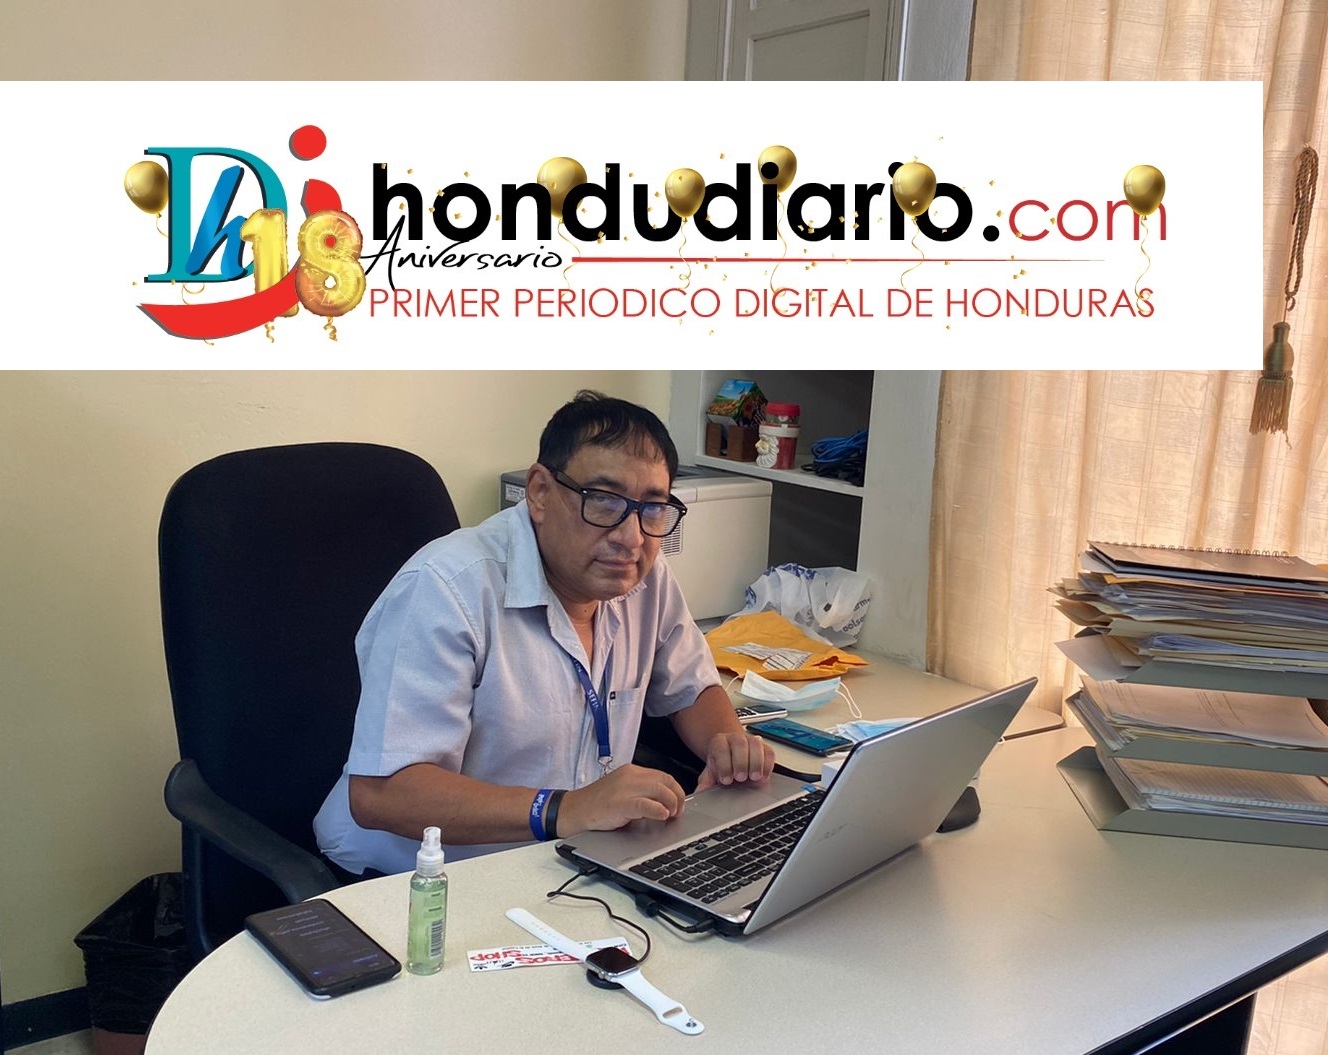 Felicidades Hondudiario.com en su XVIII aniversario: Mauro Orellana